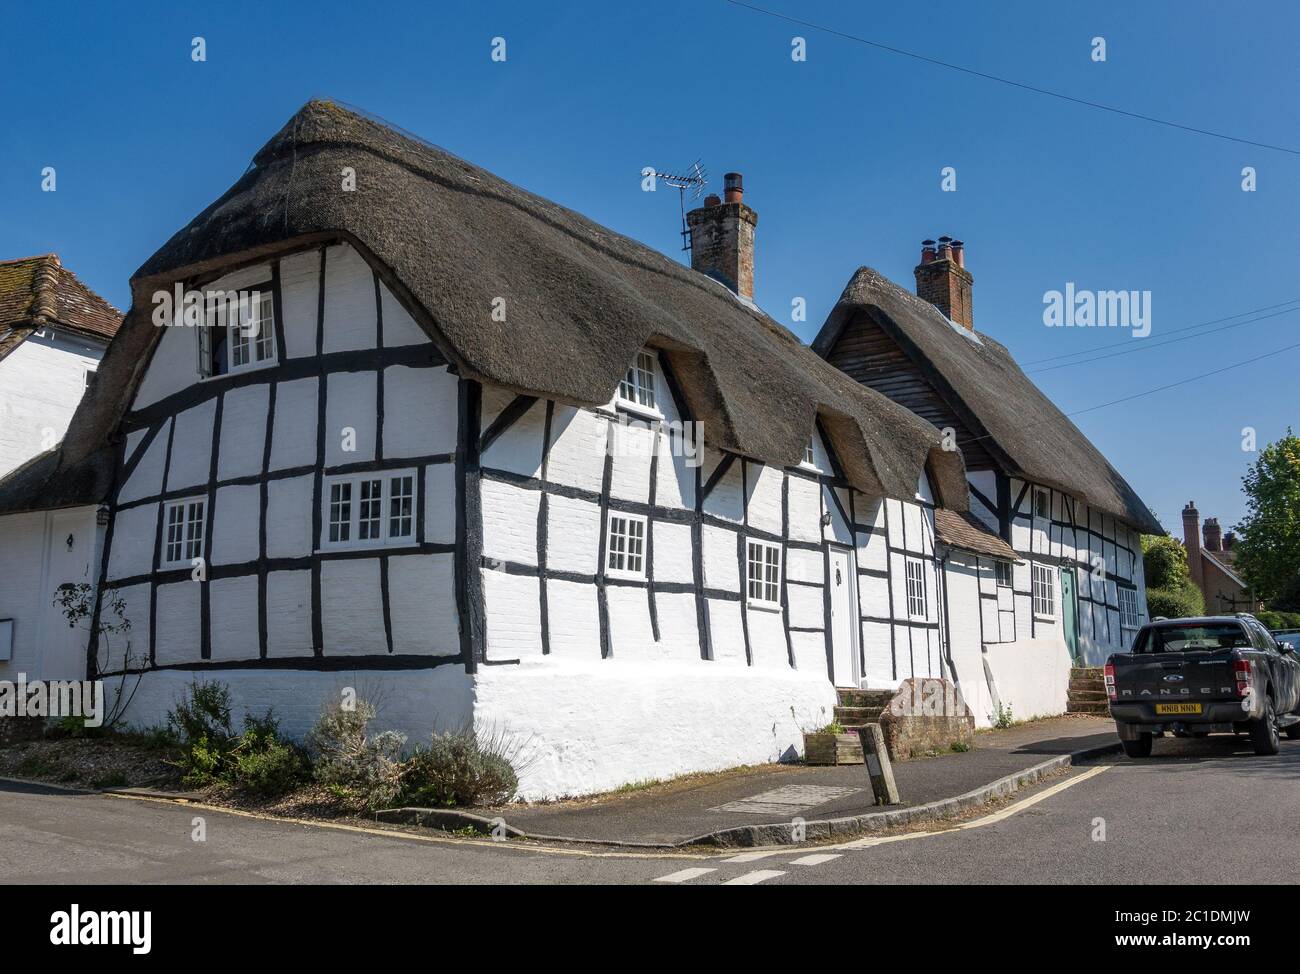 Cottages traditionnels à toit de chaume à Micheldever, Hampshire, Angleterre, Royaume-Uni Banque D'Images